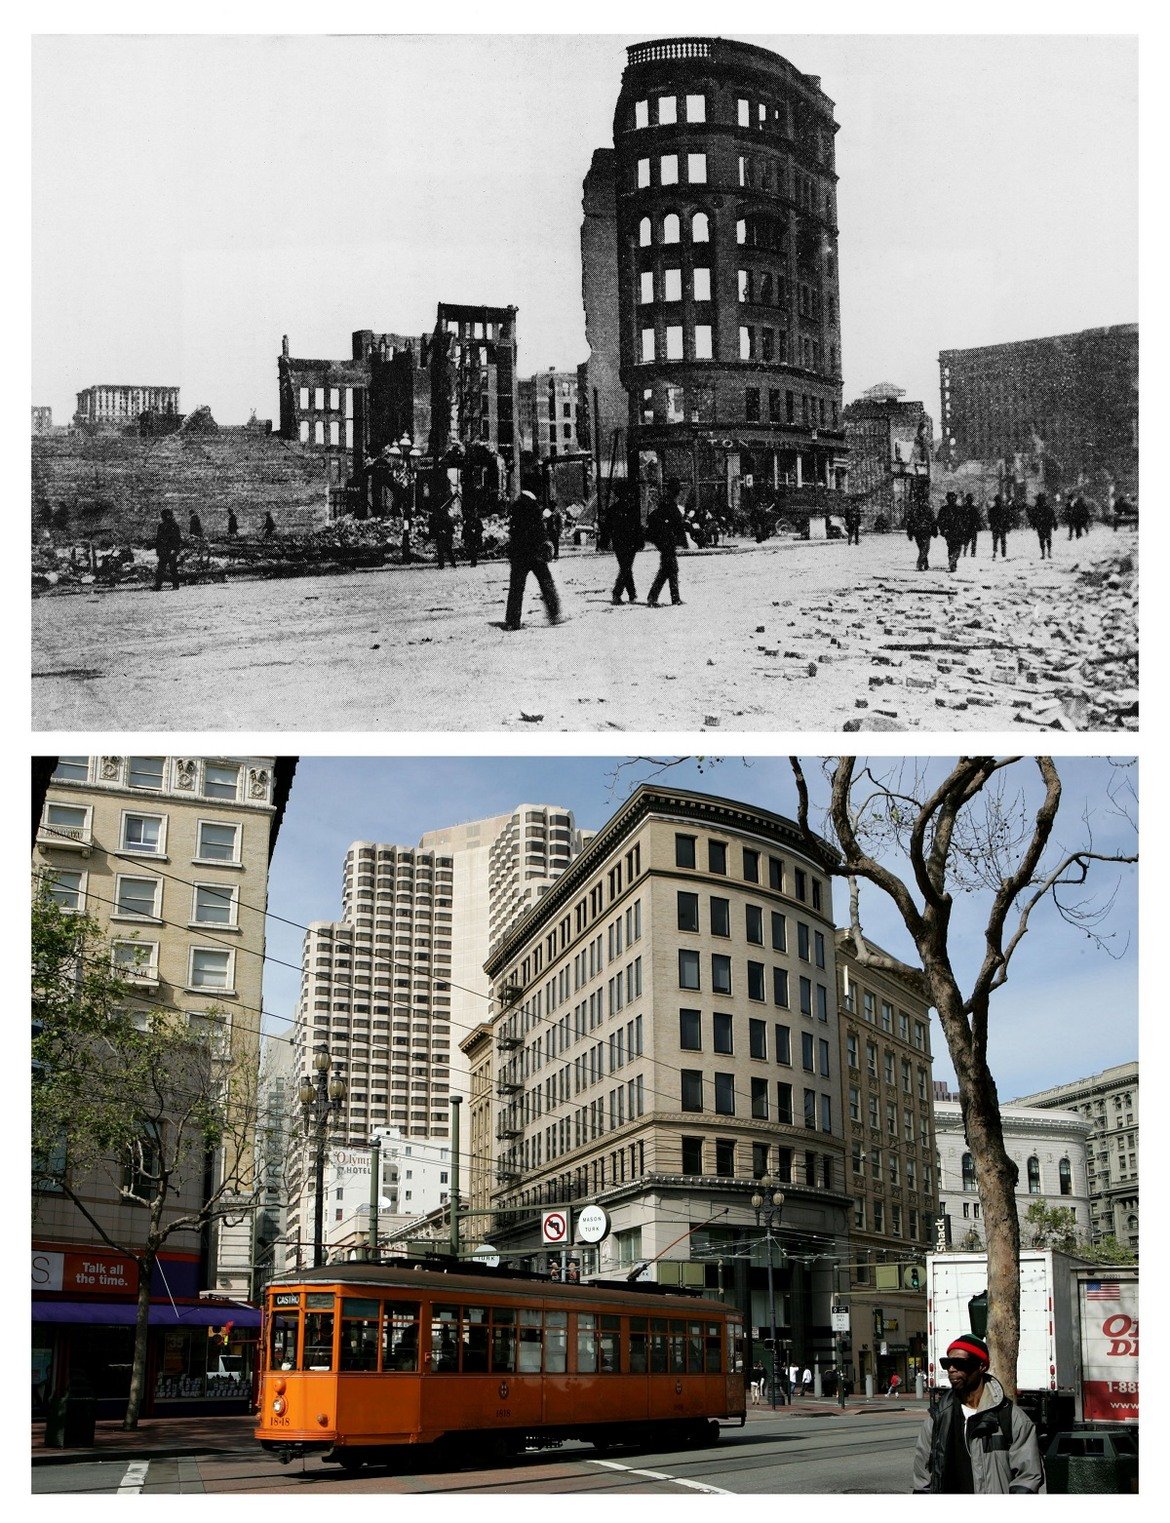 1. Преди и след земетресението: Пазарната улица на улица "Мейсън" през 1906 и 2006 г.